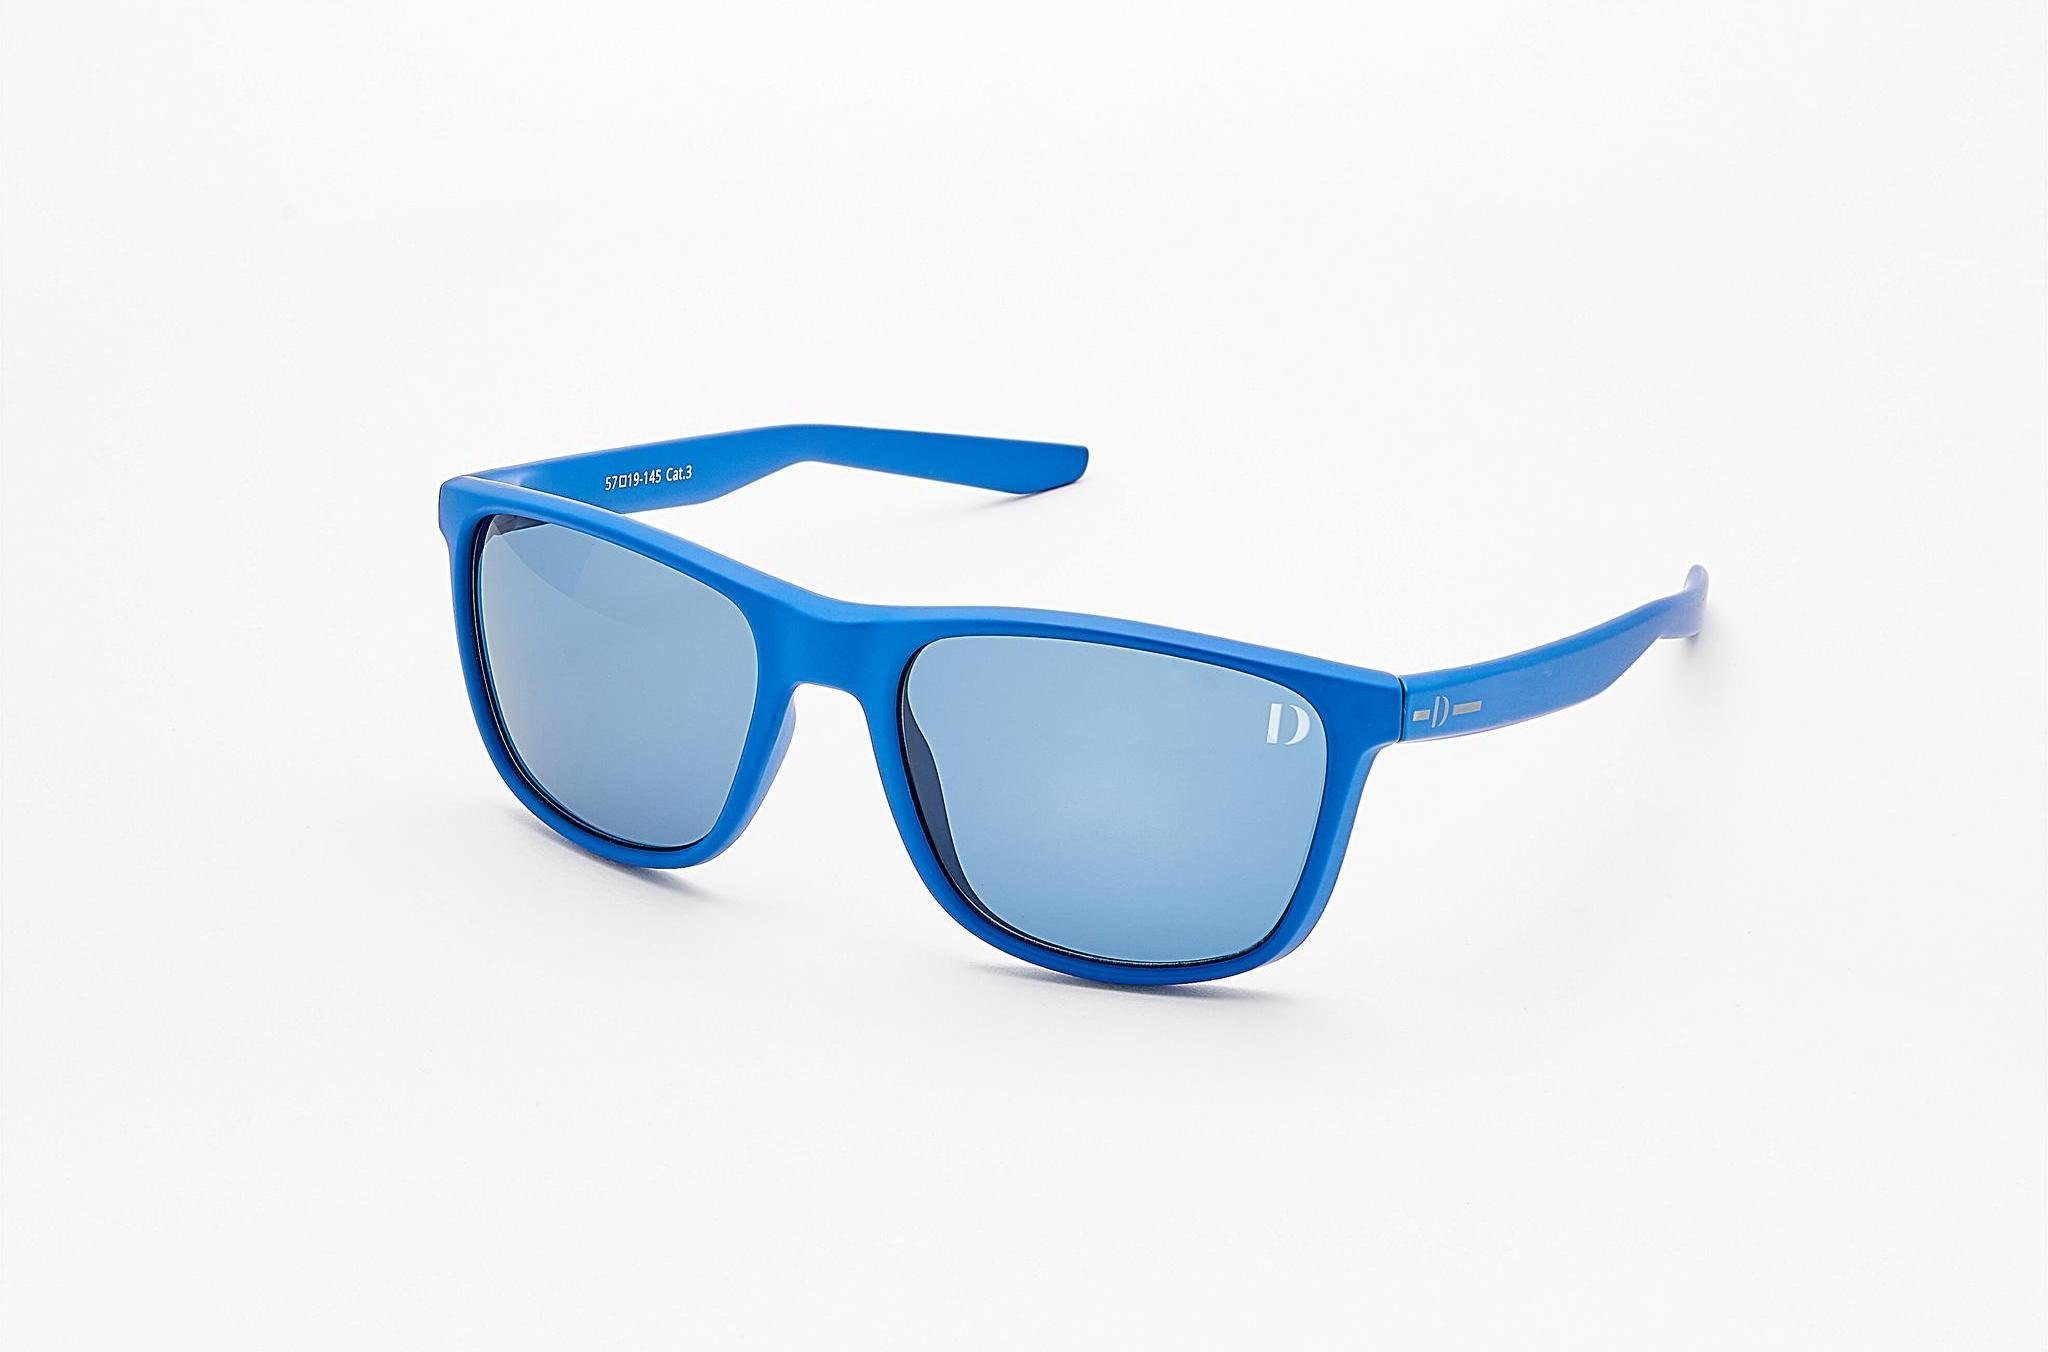 4 EDITION Dieter blau Sonnenbrille Bohlen